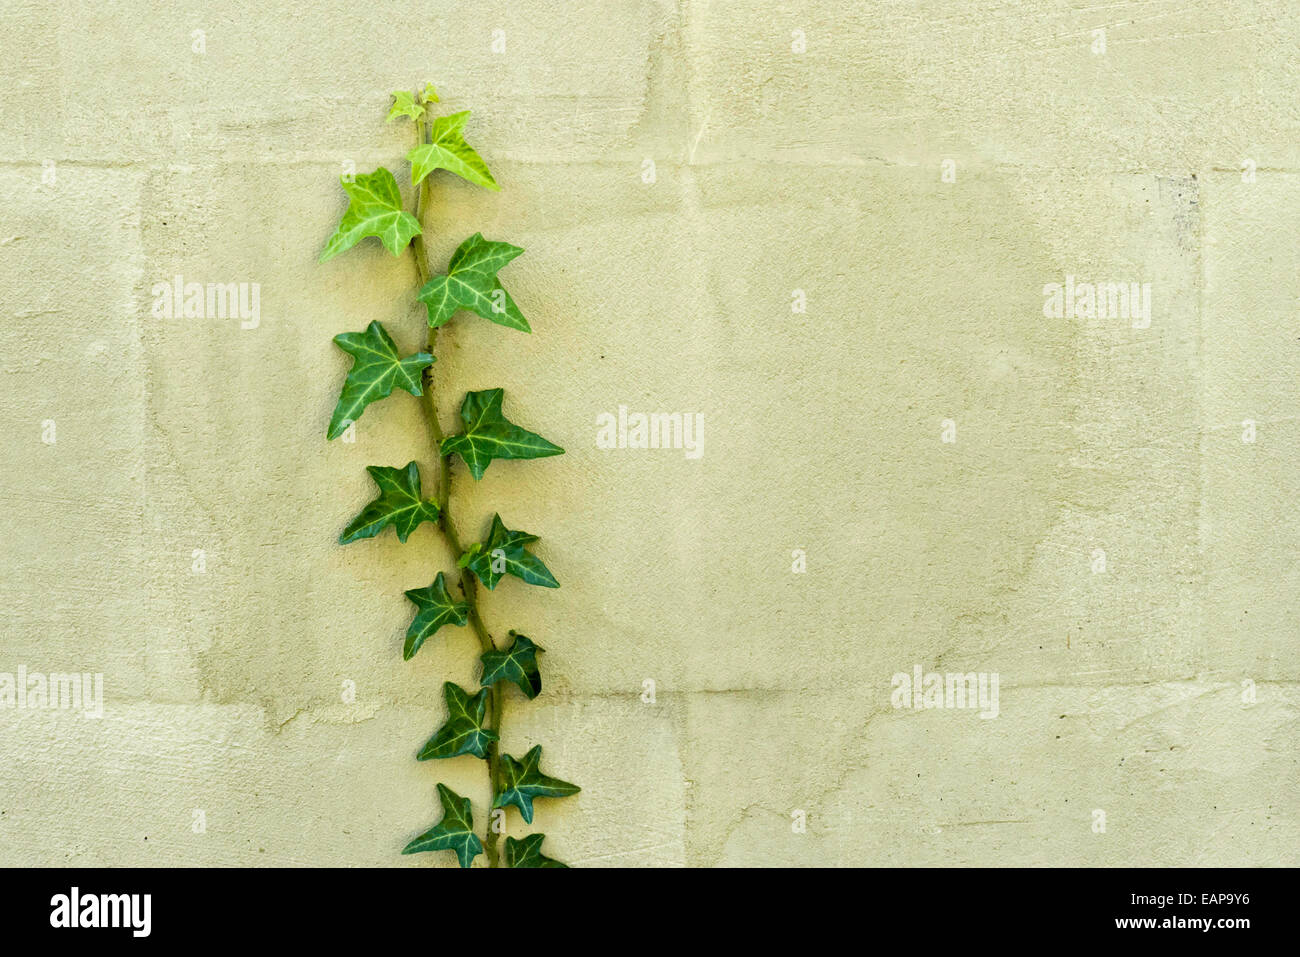 Impianto di edera che cresce su una parete Foto Stock